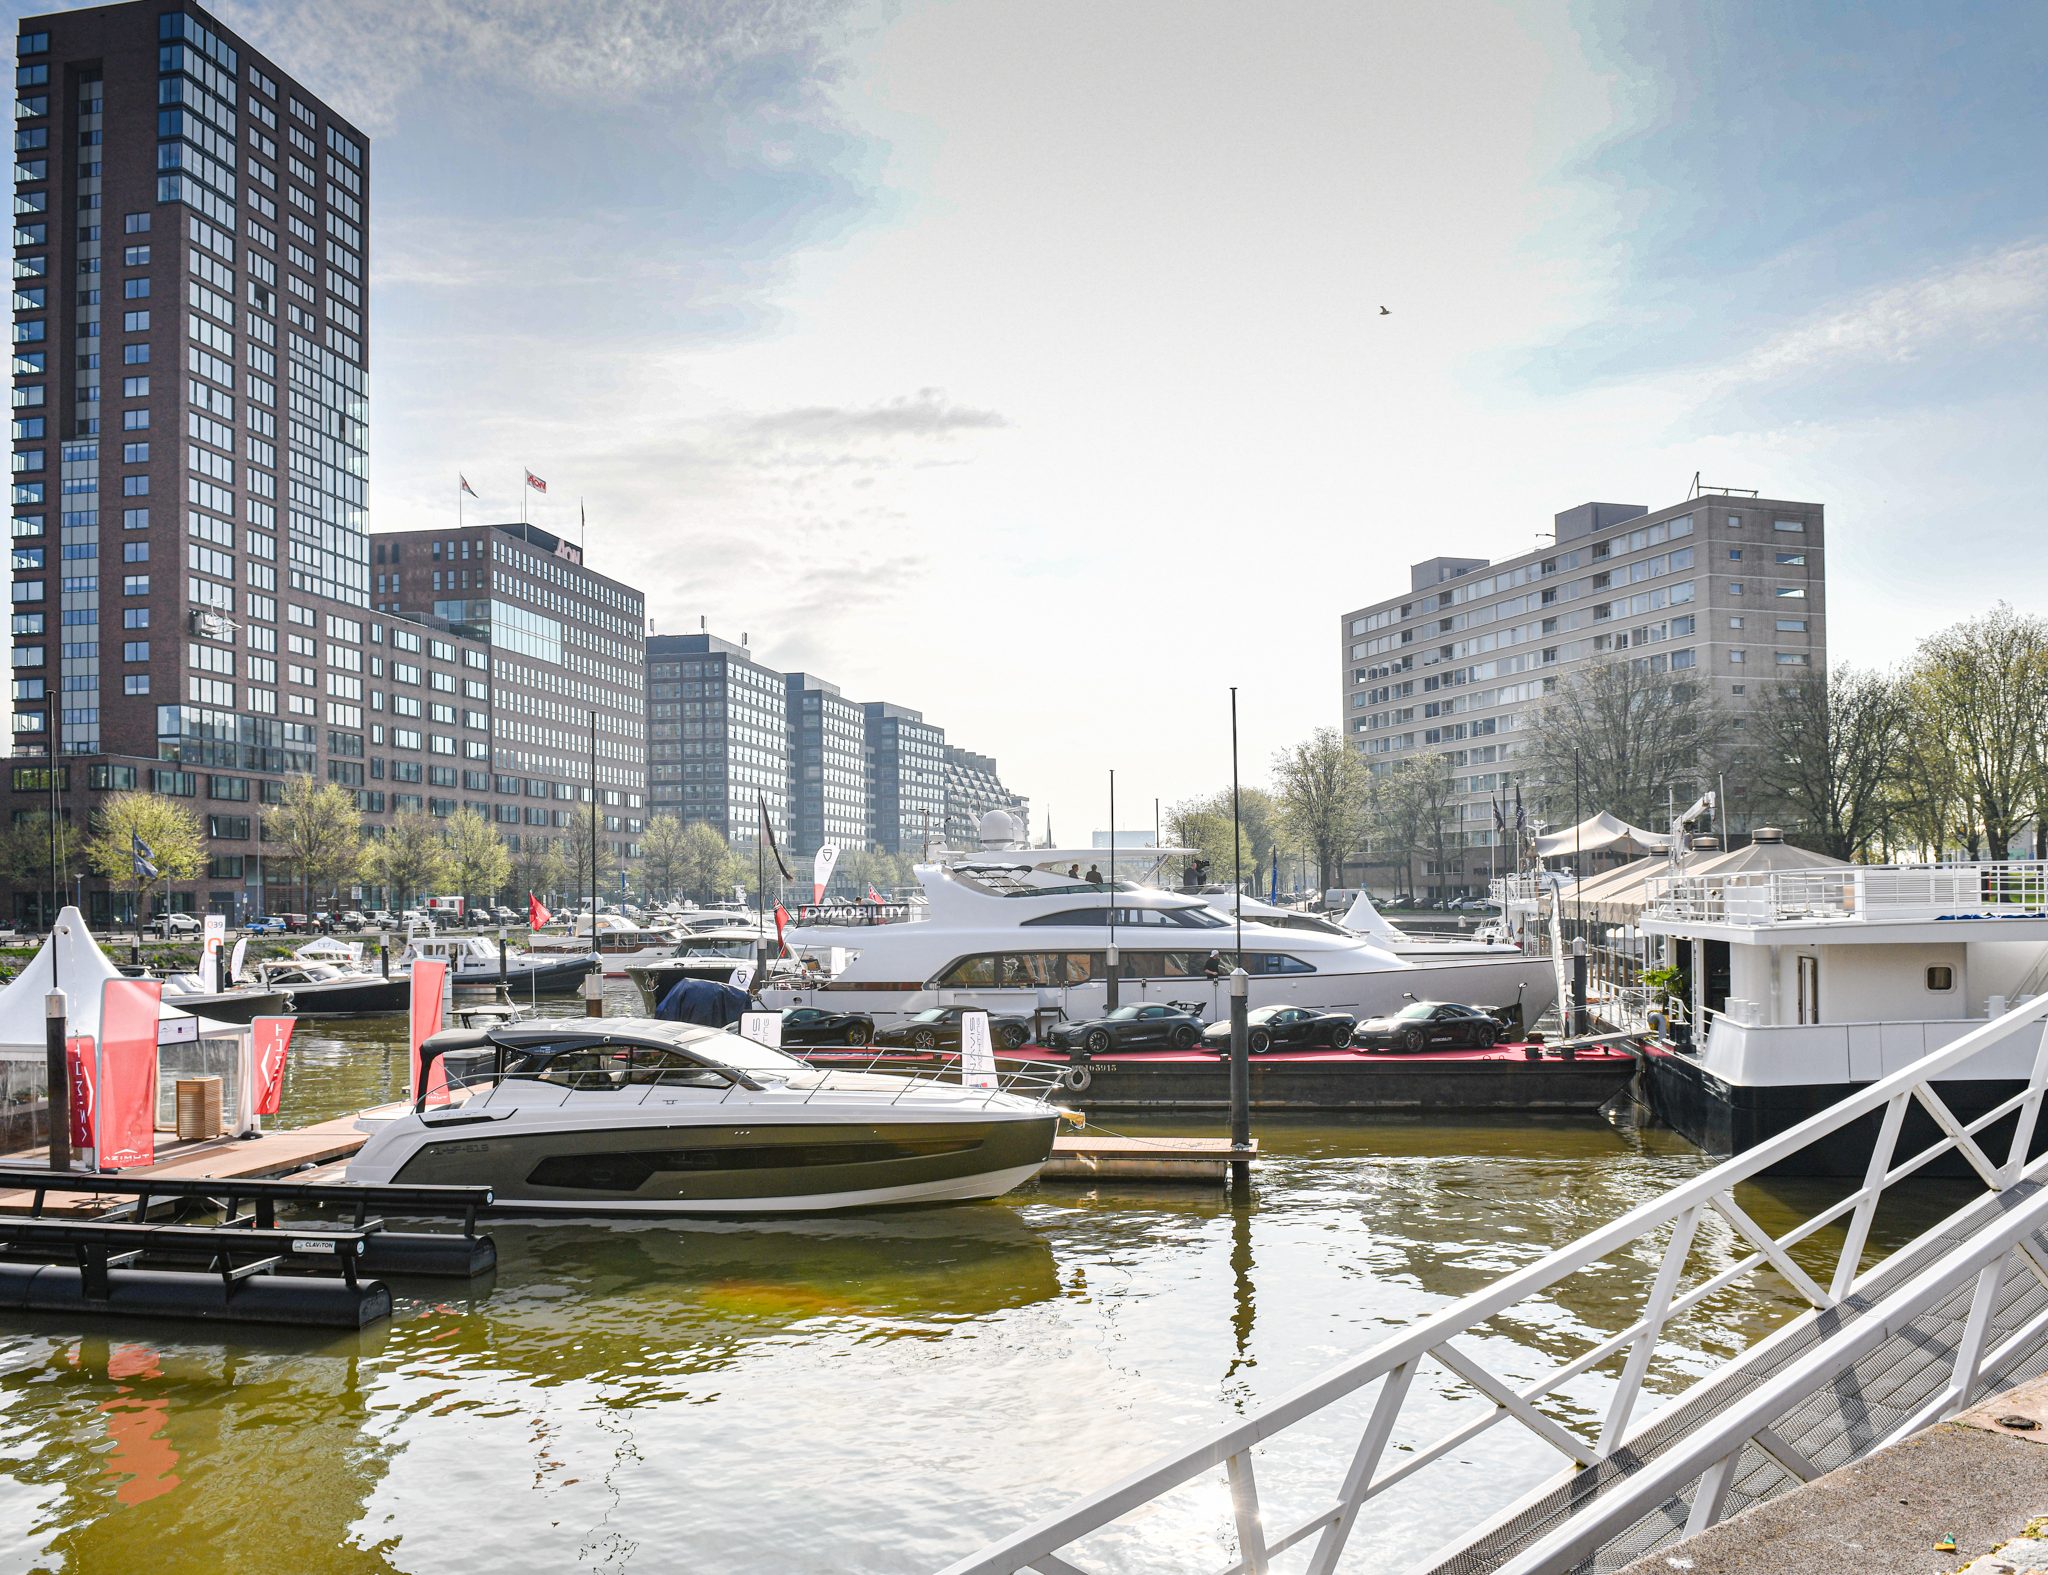 Prachtig weer tijdens de Rotterdam Boatshow. (Foto Rotterdam Boatshow)